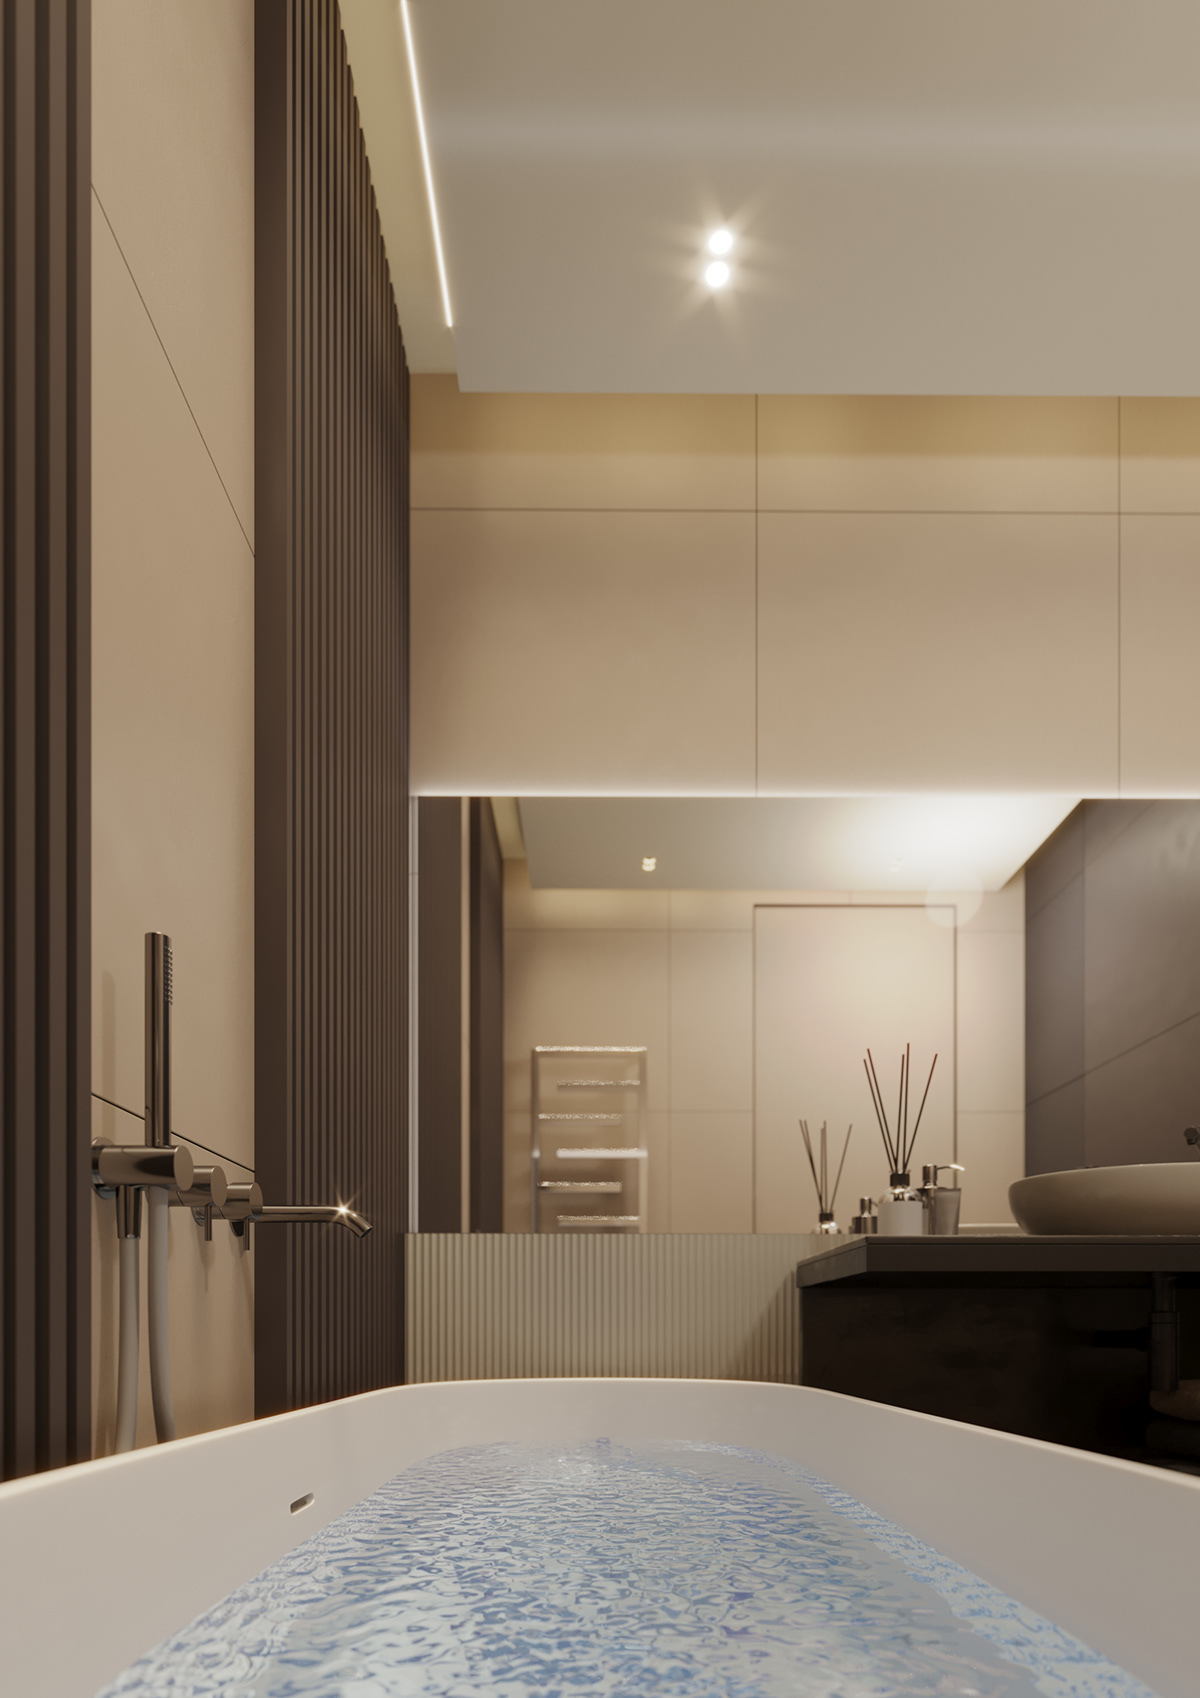 дизайн ванной дизайн гостиной дизайн интерьера Дизайн квартиры дизайн кухни  Дизайн проект  дизайн спальни интерьер современный интерьер